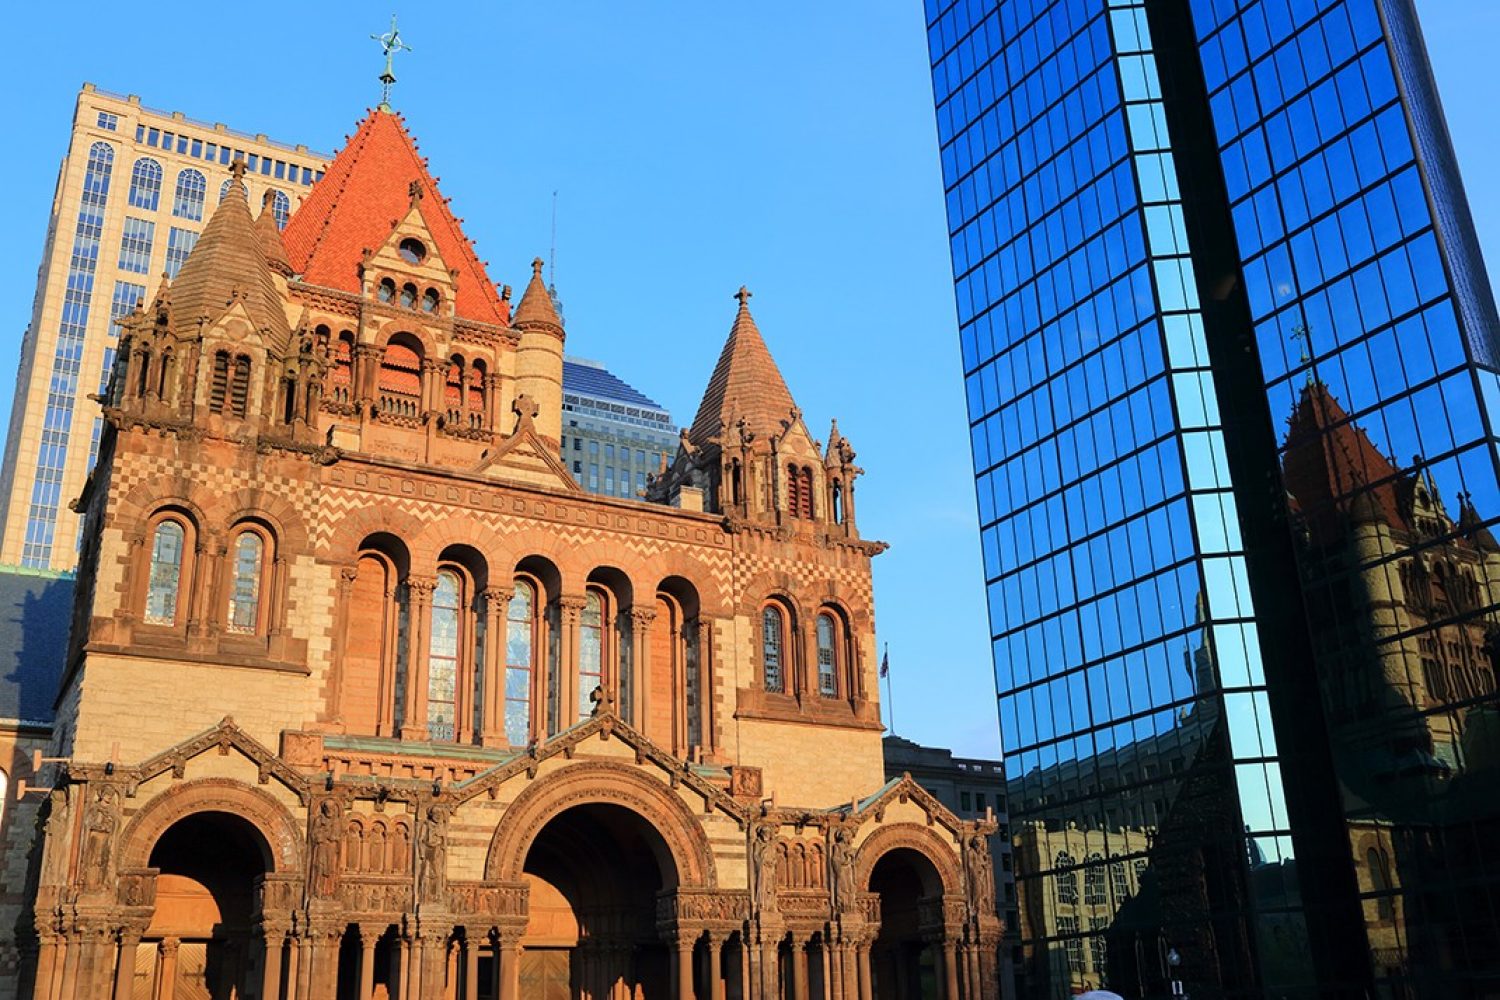 Trinity Church in Boston's Copley Square